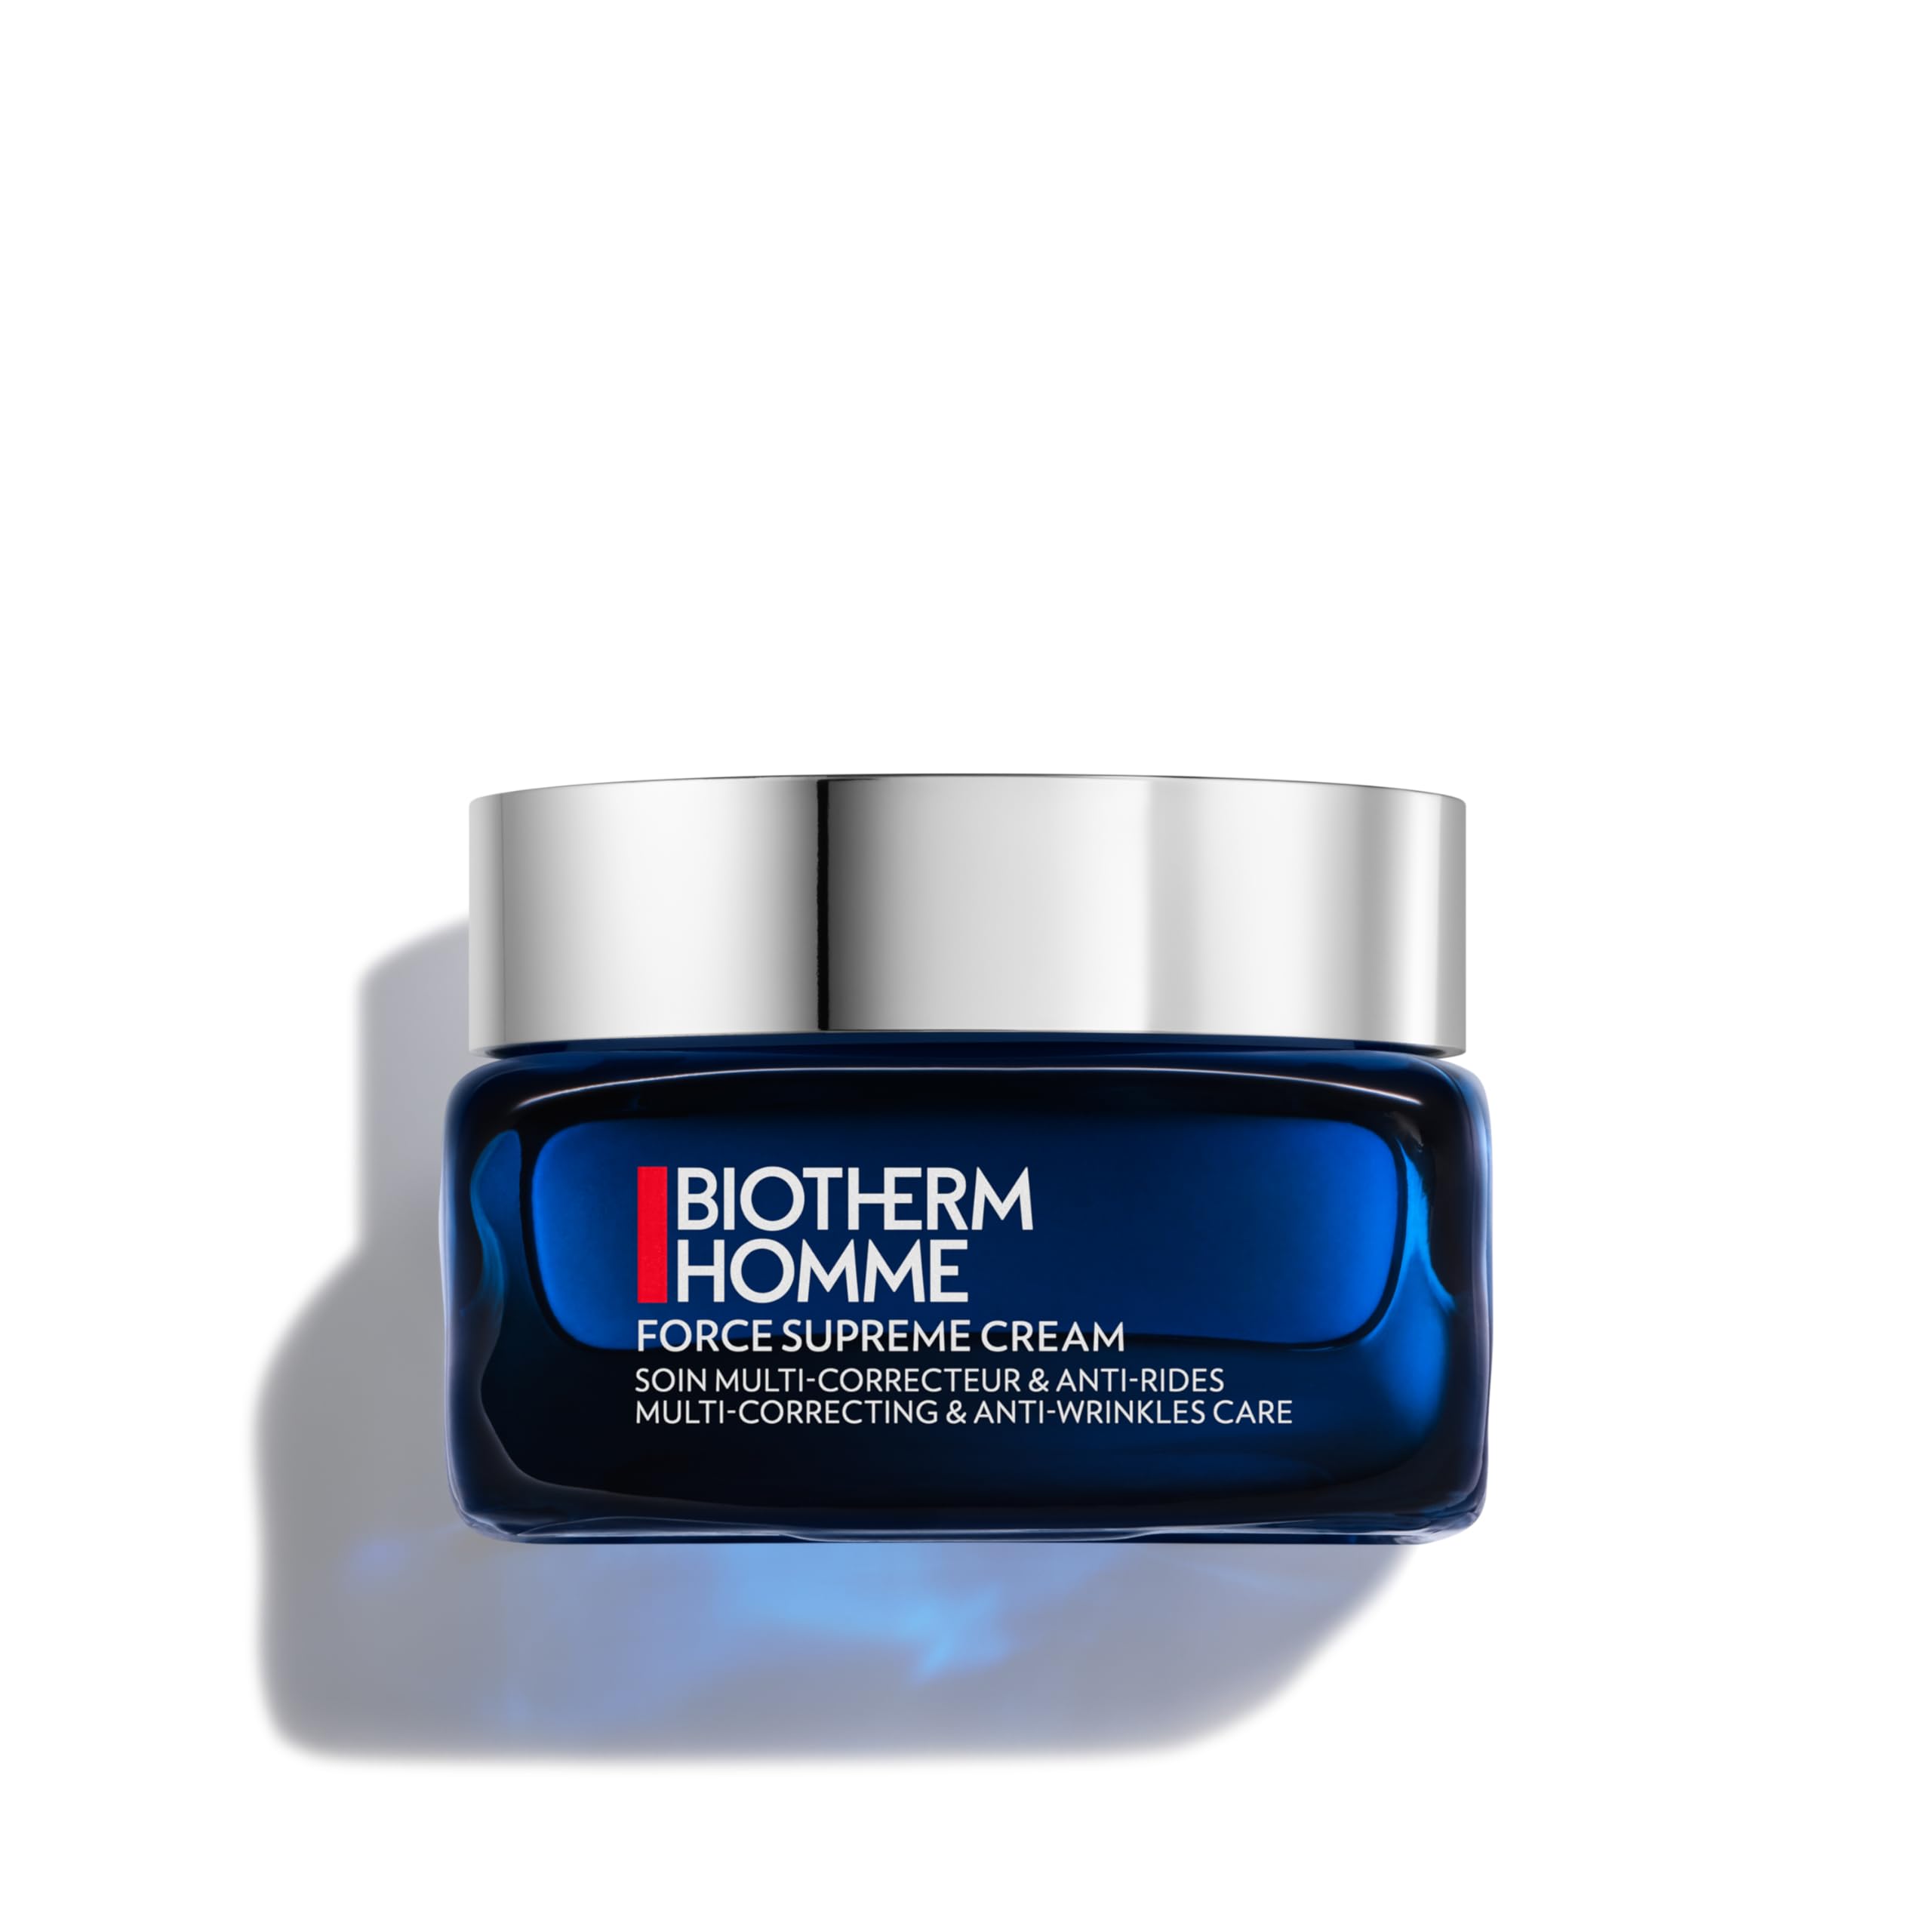 BIOTHERM Homme Force Supreme Cream, mit Algenextrakt und Pro-Xylane, feuchtigkeitsspendende Anti Aging Gesichtscreme für Männer, für ein strahlenderes Hautbild, 50 ml